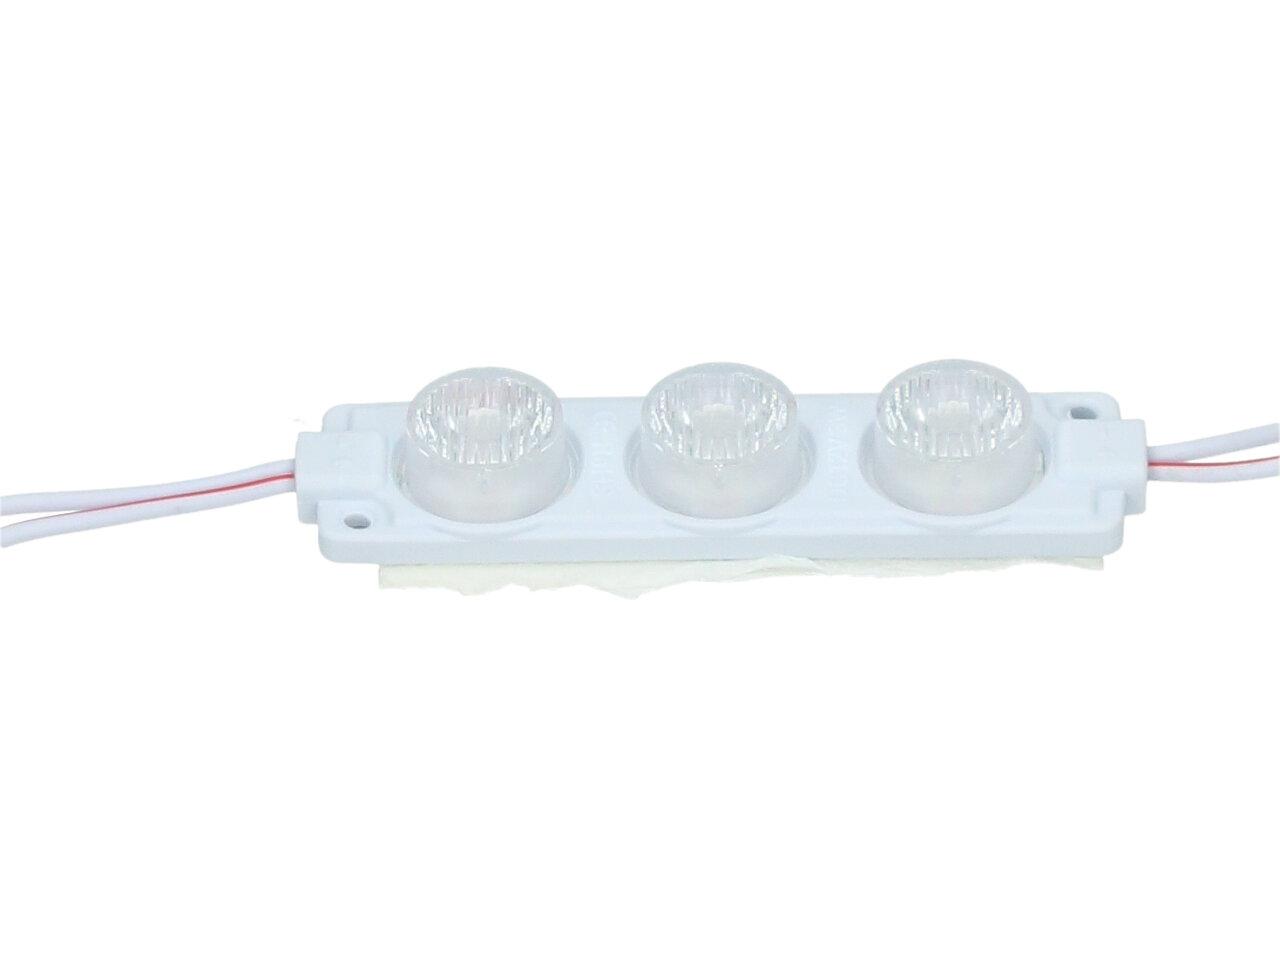 Nalepovací silná tříbodová LED dioda bílá HT-9274